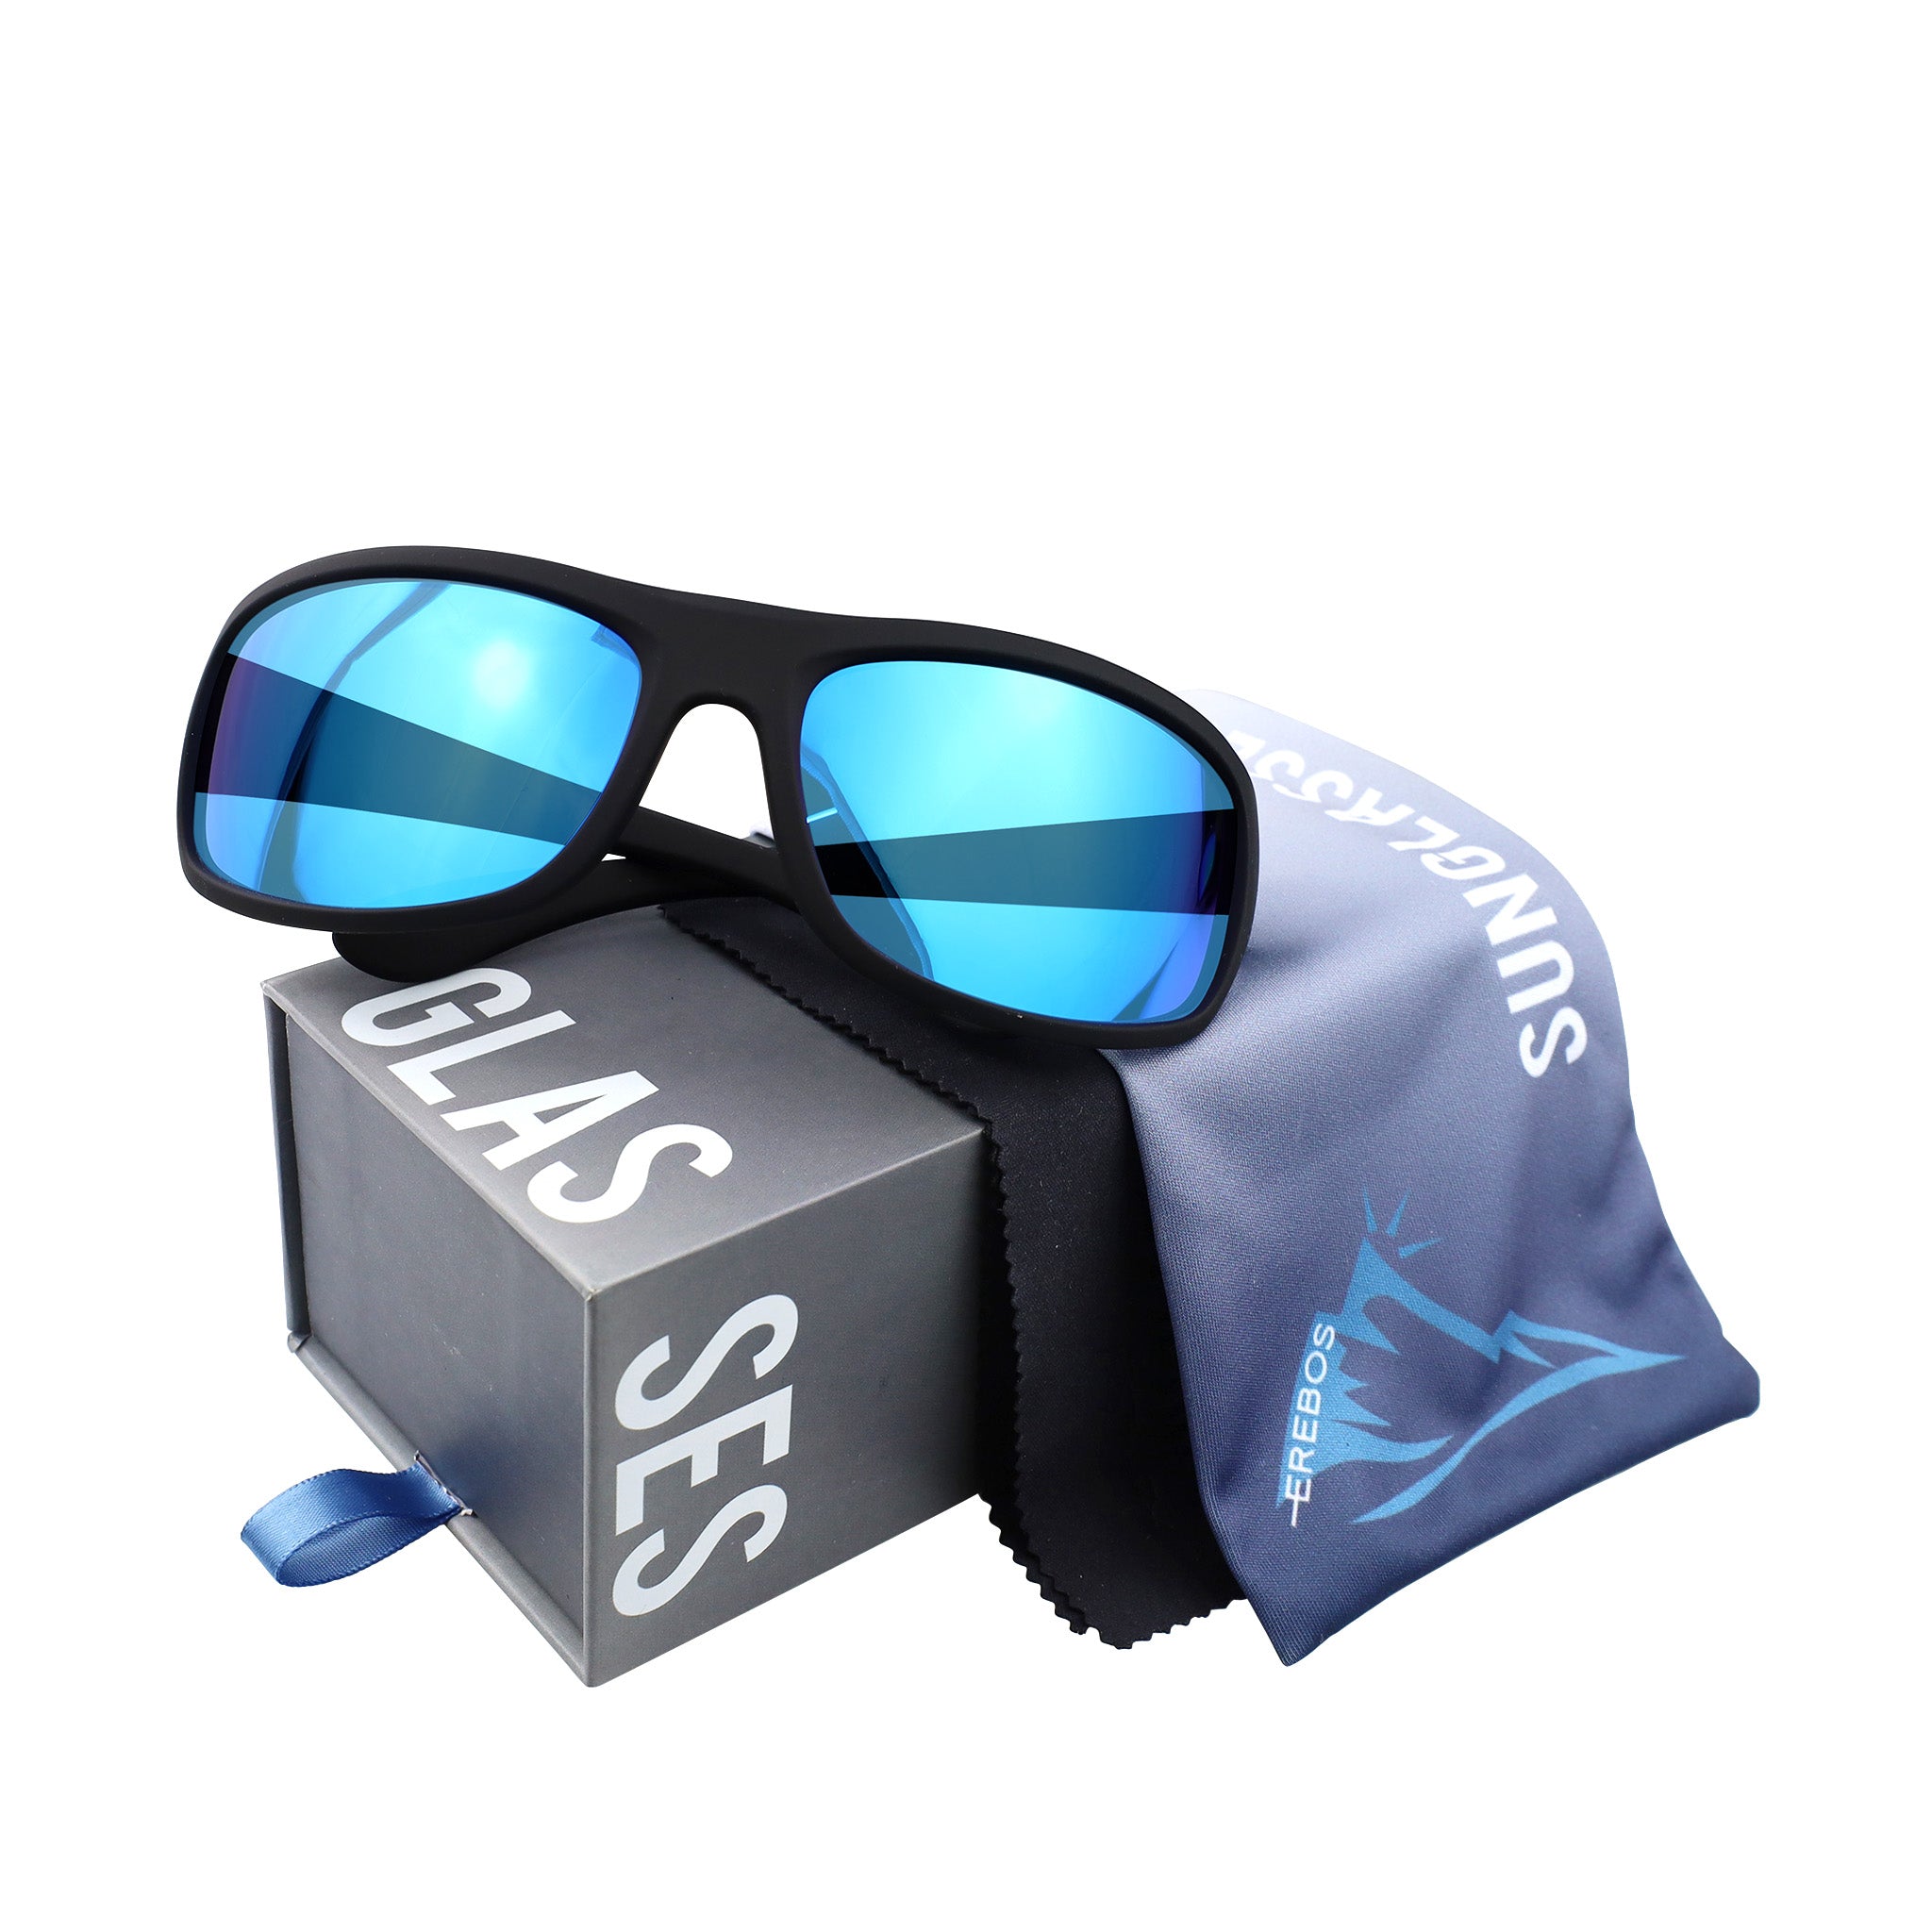 Sonnenbrille Erebos Extra Dunkel Kategorie 4 , M Blau verspiegelt